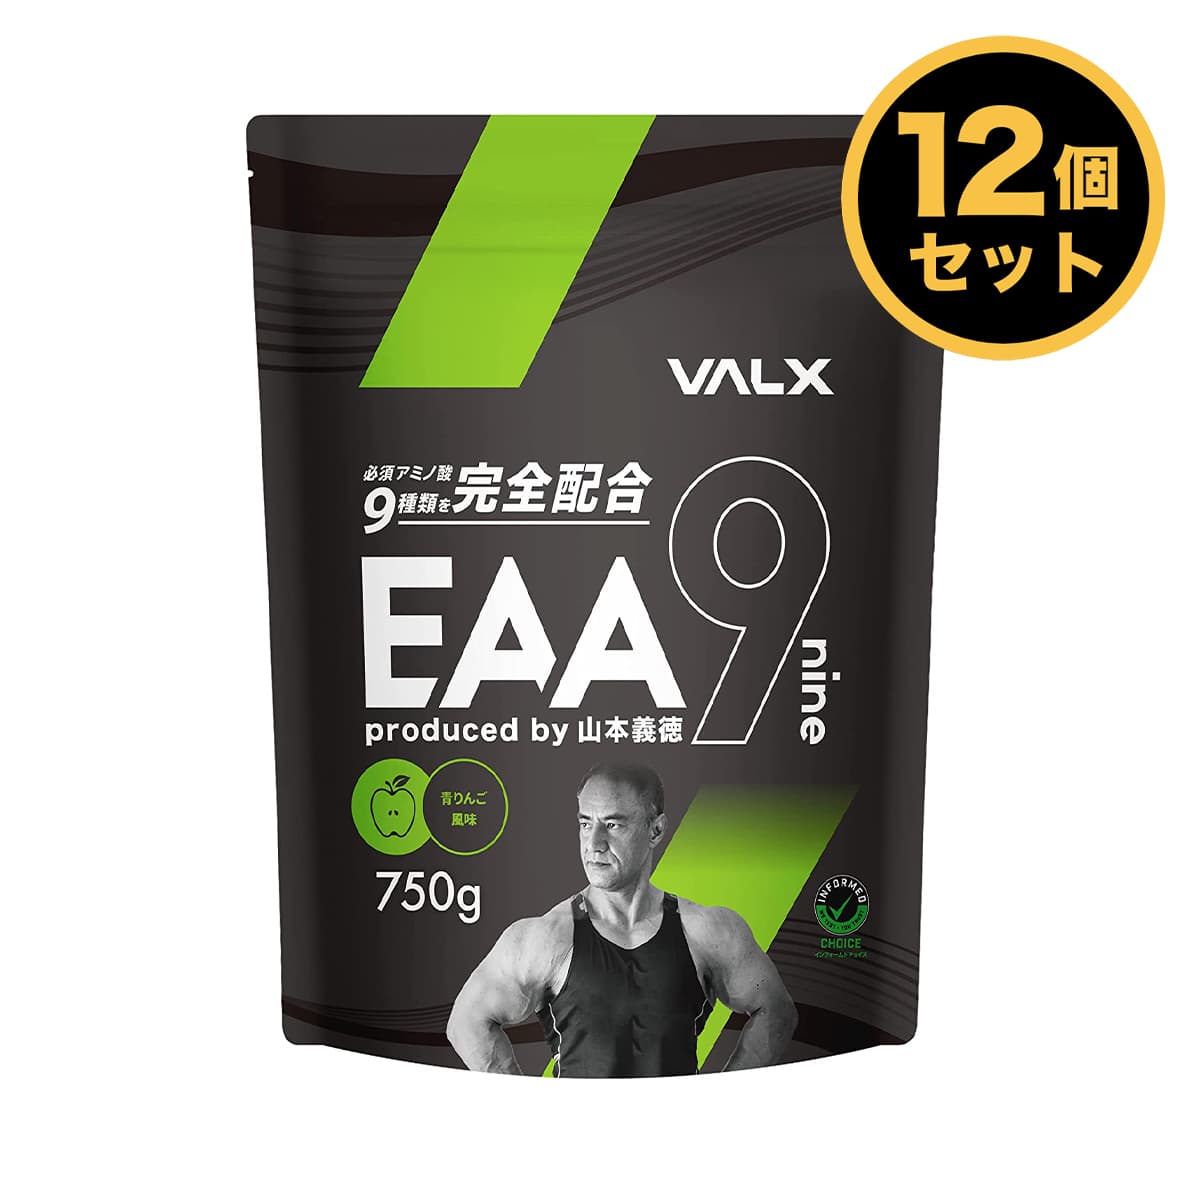 【楽天市場】【お得な2個セット】VALX (バルクス) EAA9 Produced